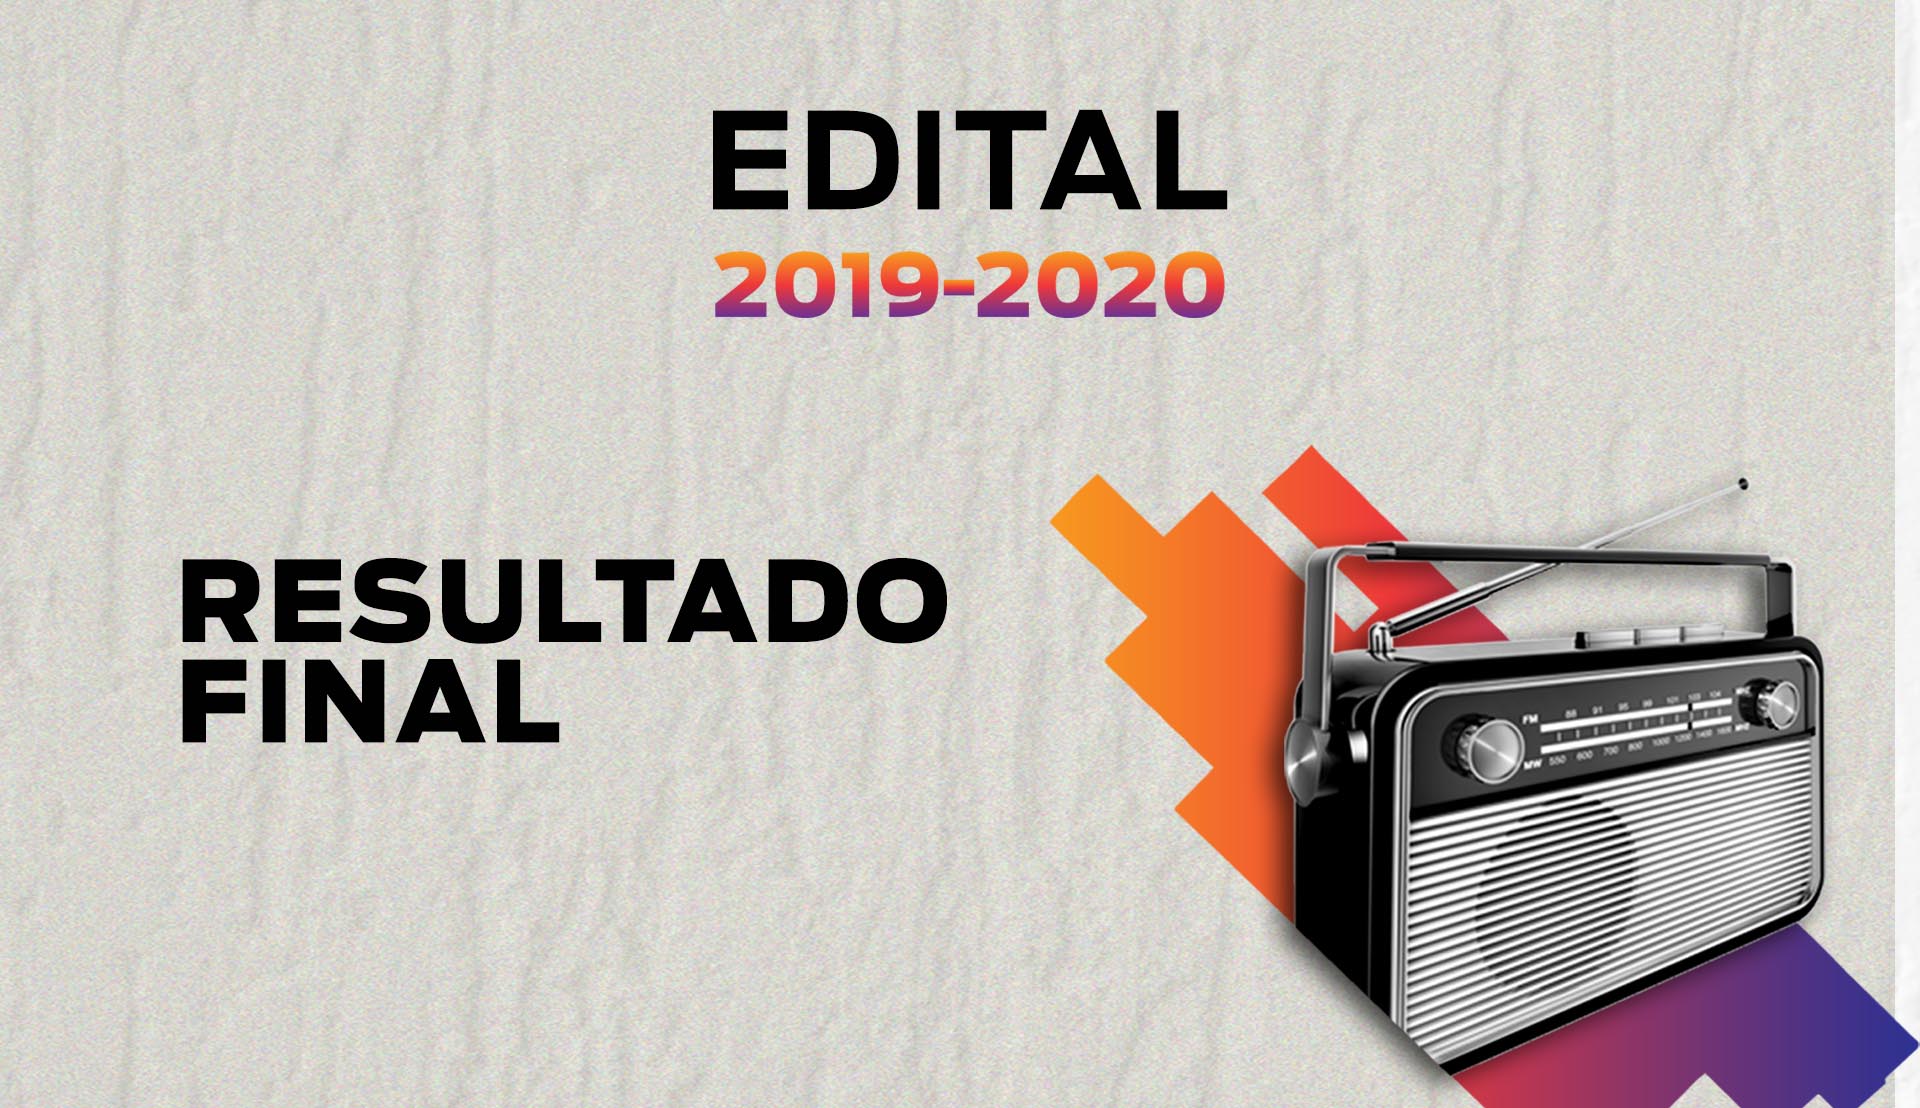 Edital 2019-2020, Resultado final